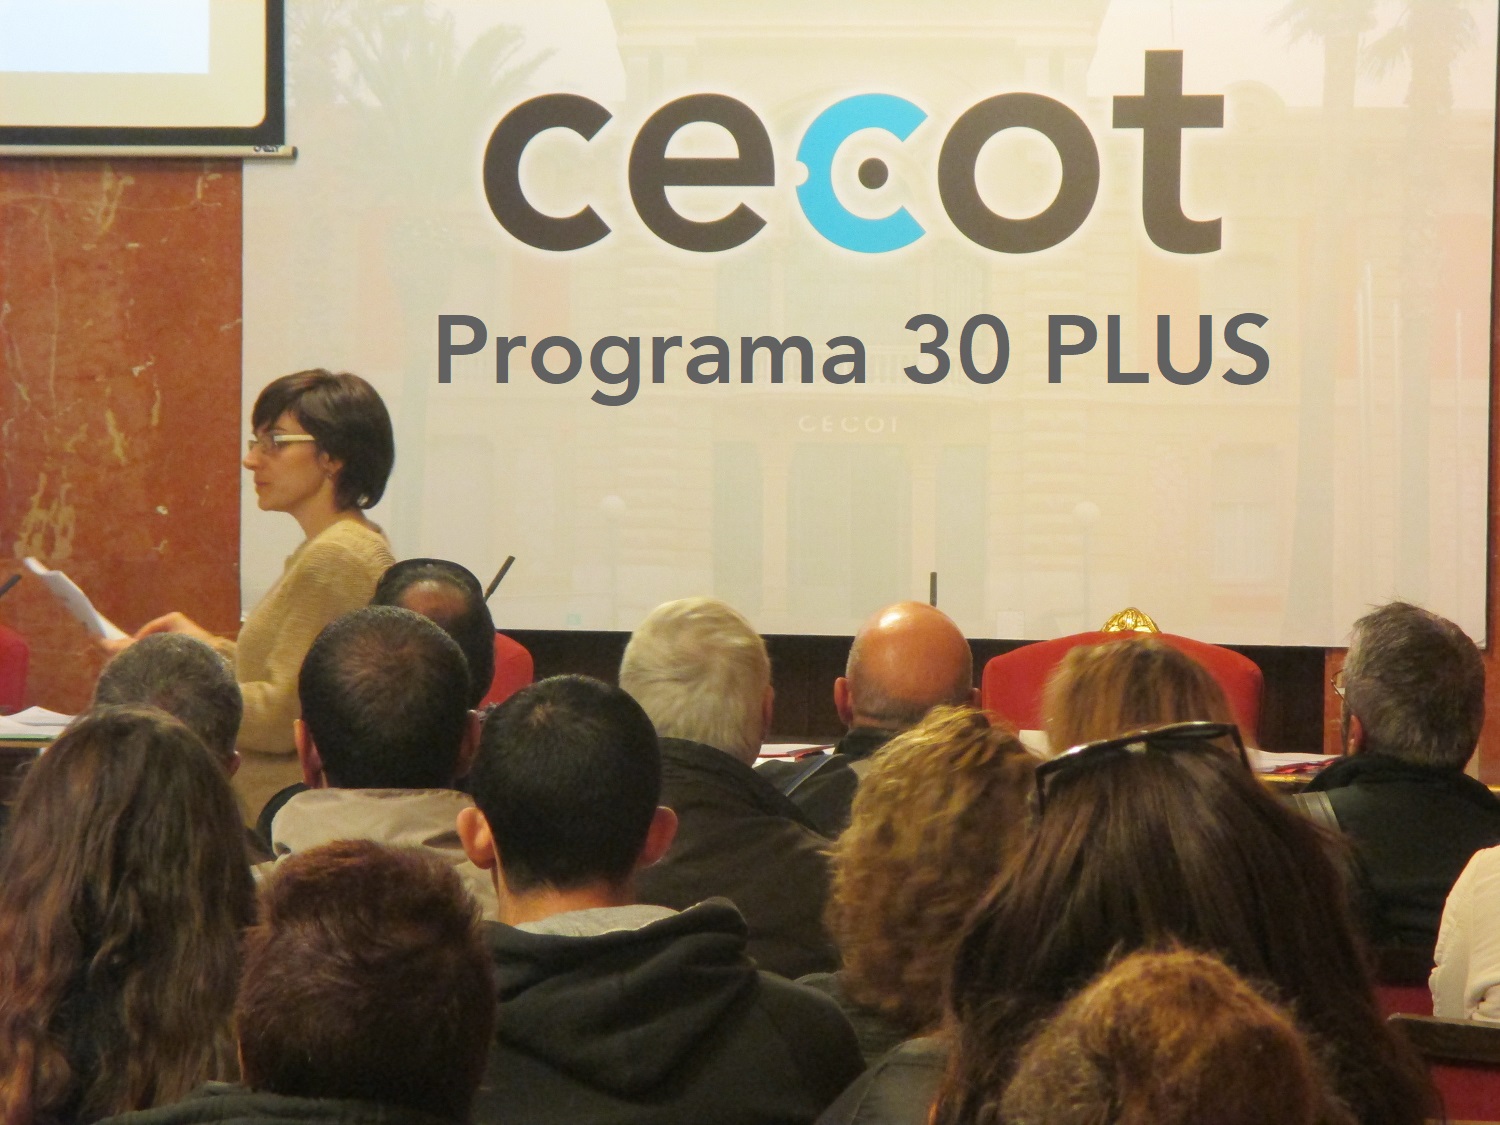 Cecot Formació activa la 3ª edició del programa 30 PLUS en col·laboració amb el Servei d'Ocupació de Catalunya